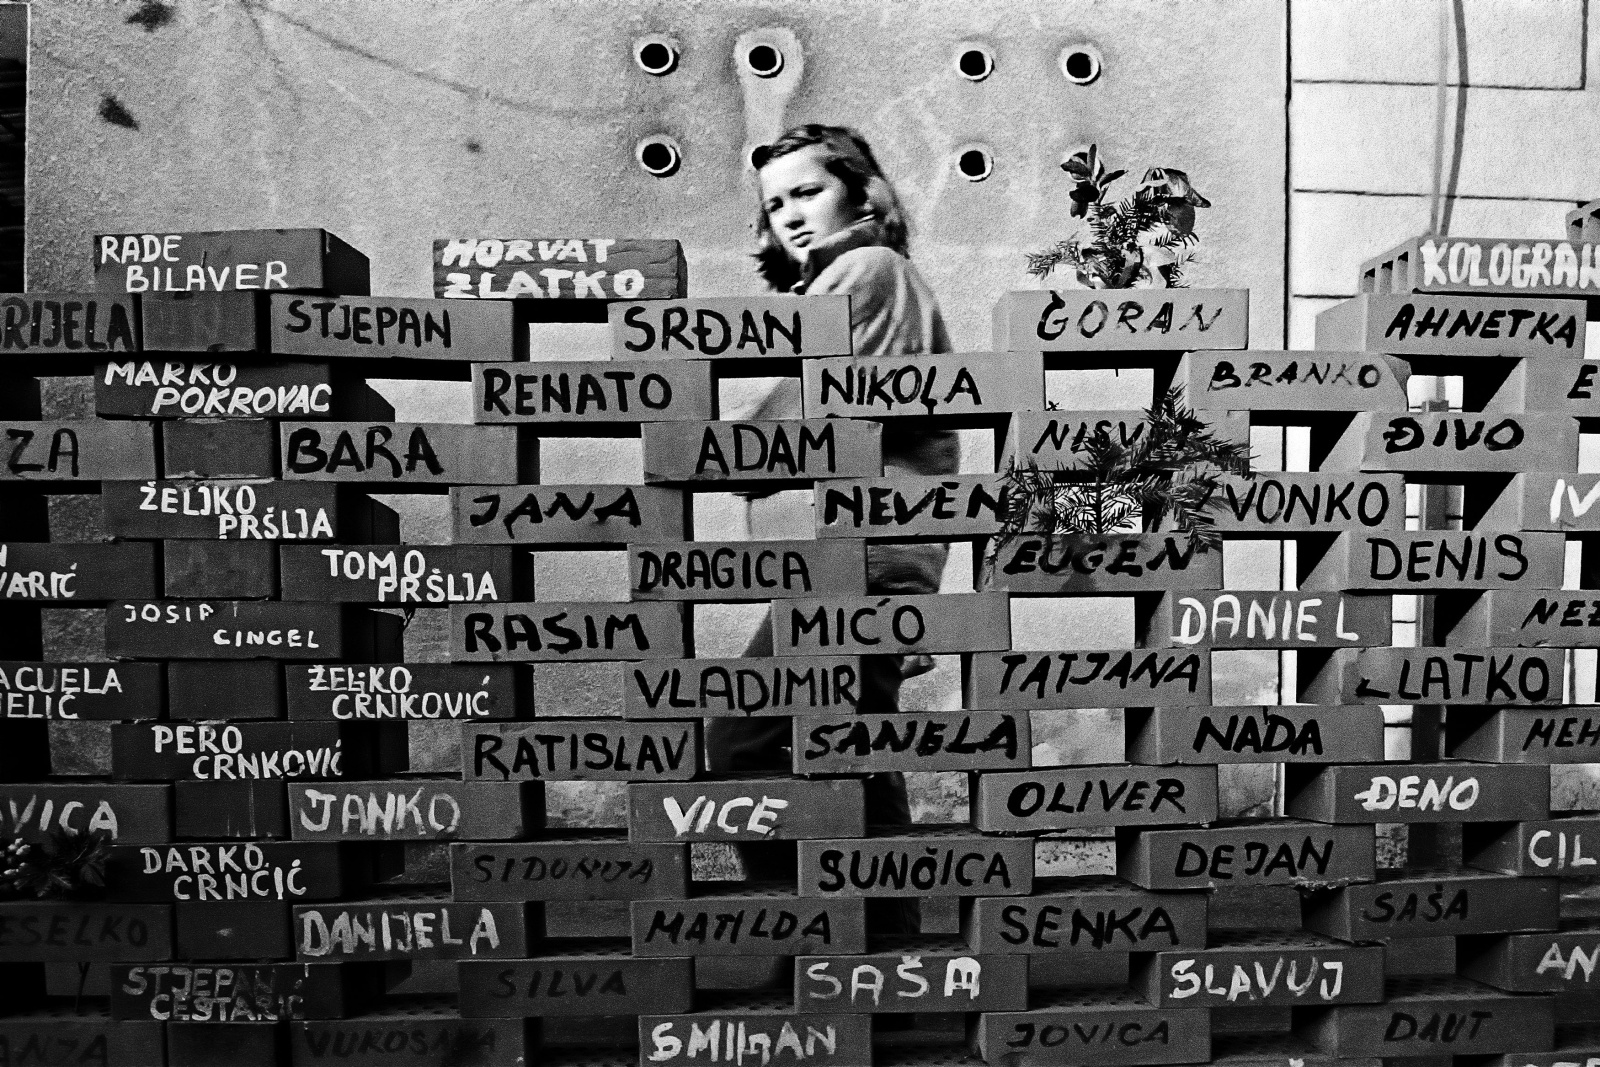 Zagabria 1991 - Un muro costruito con mattoni che riportano i nomi dei croati dispersi o caduti in guerra.